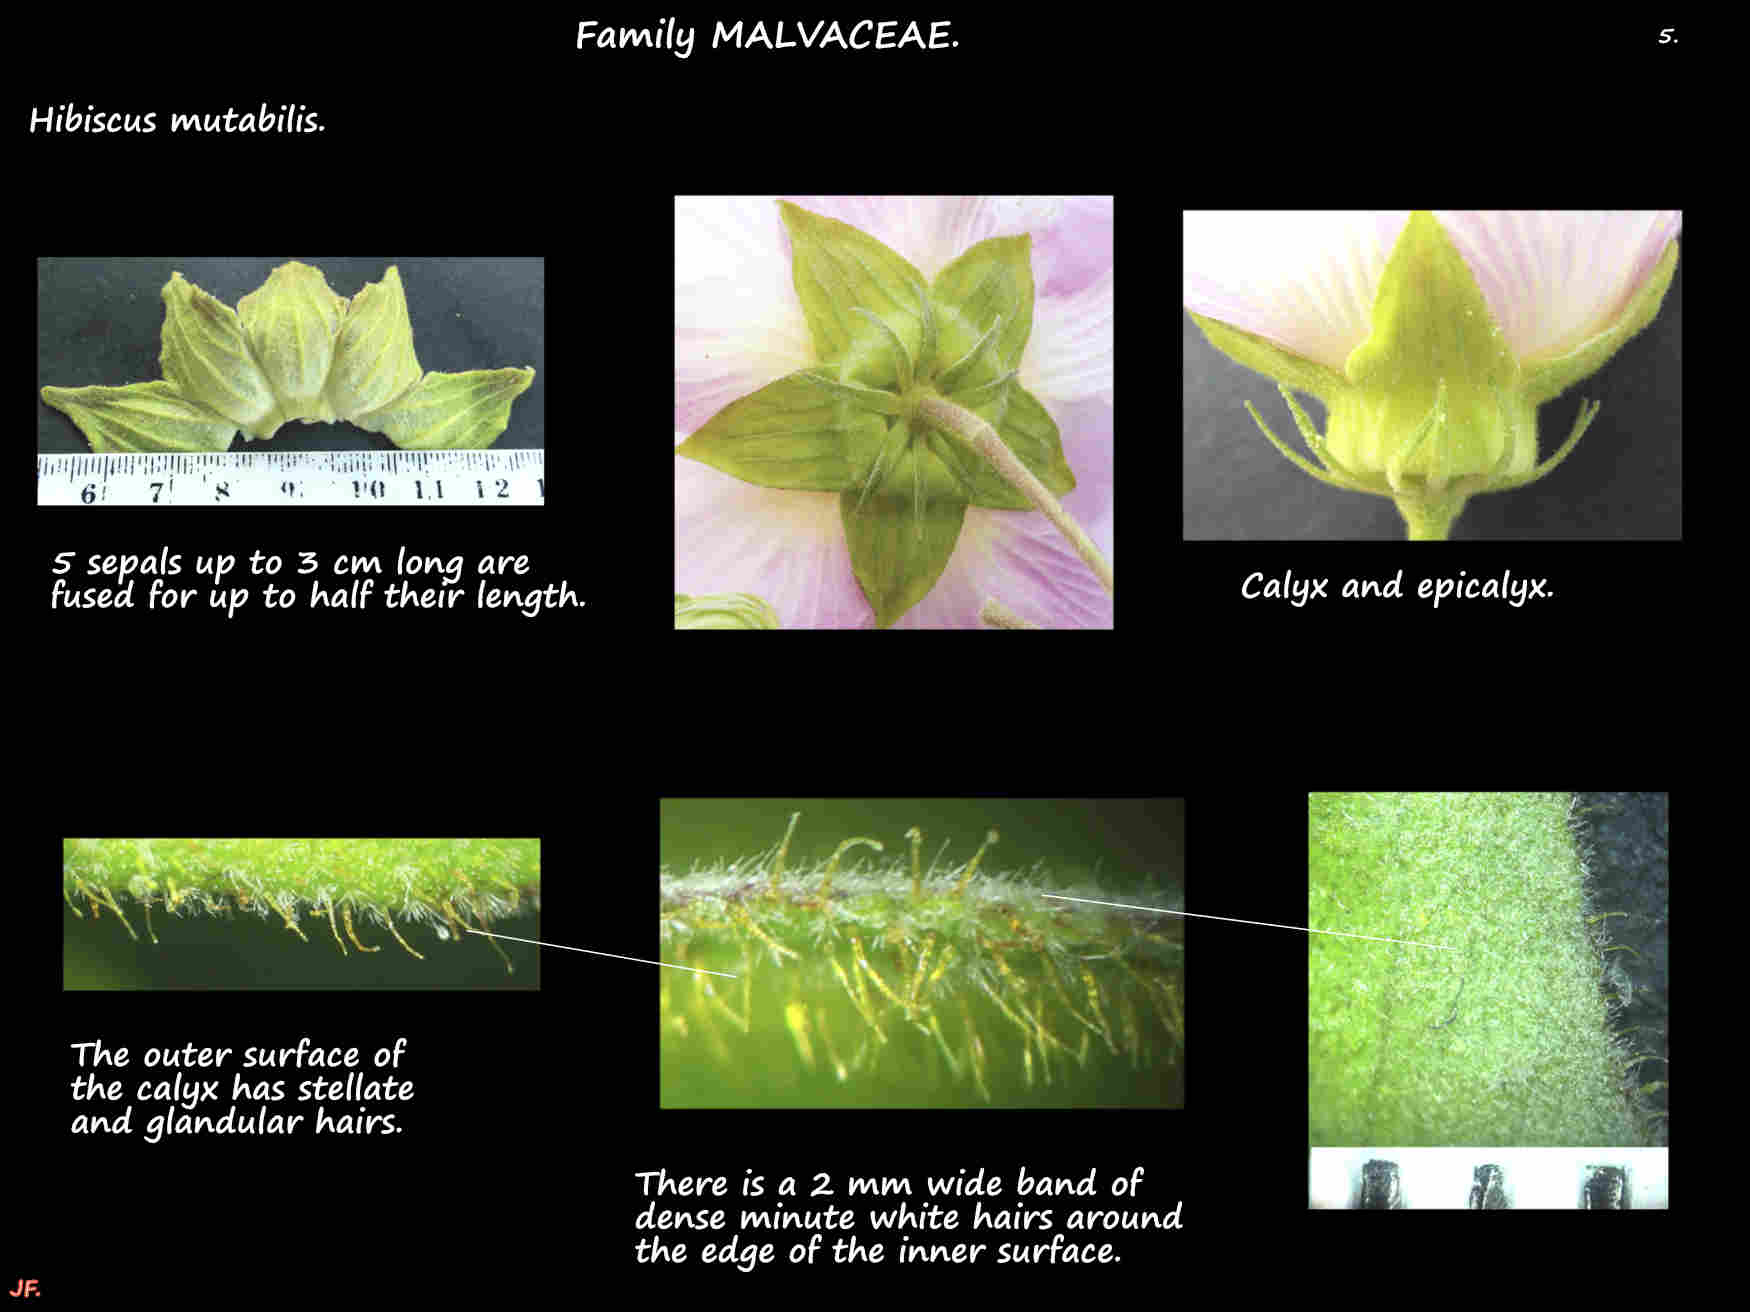 5 Hibiscus mutabilis calyx & epicalyx